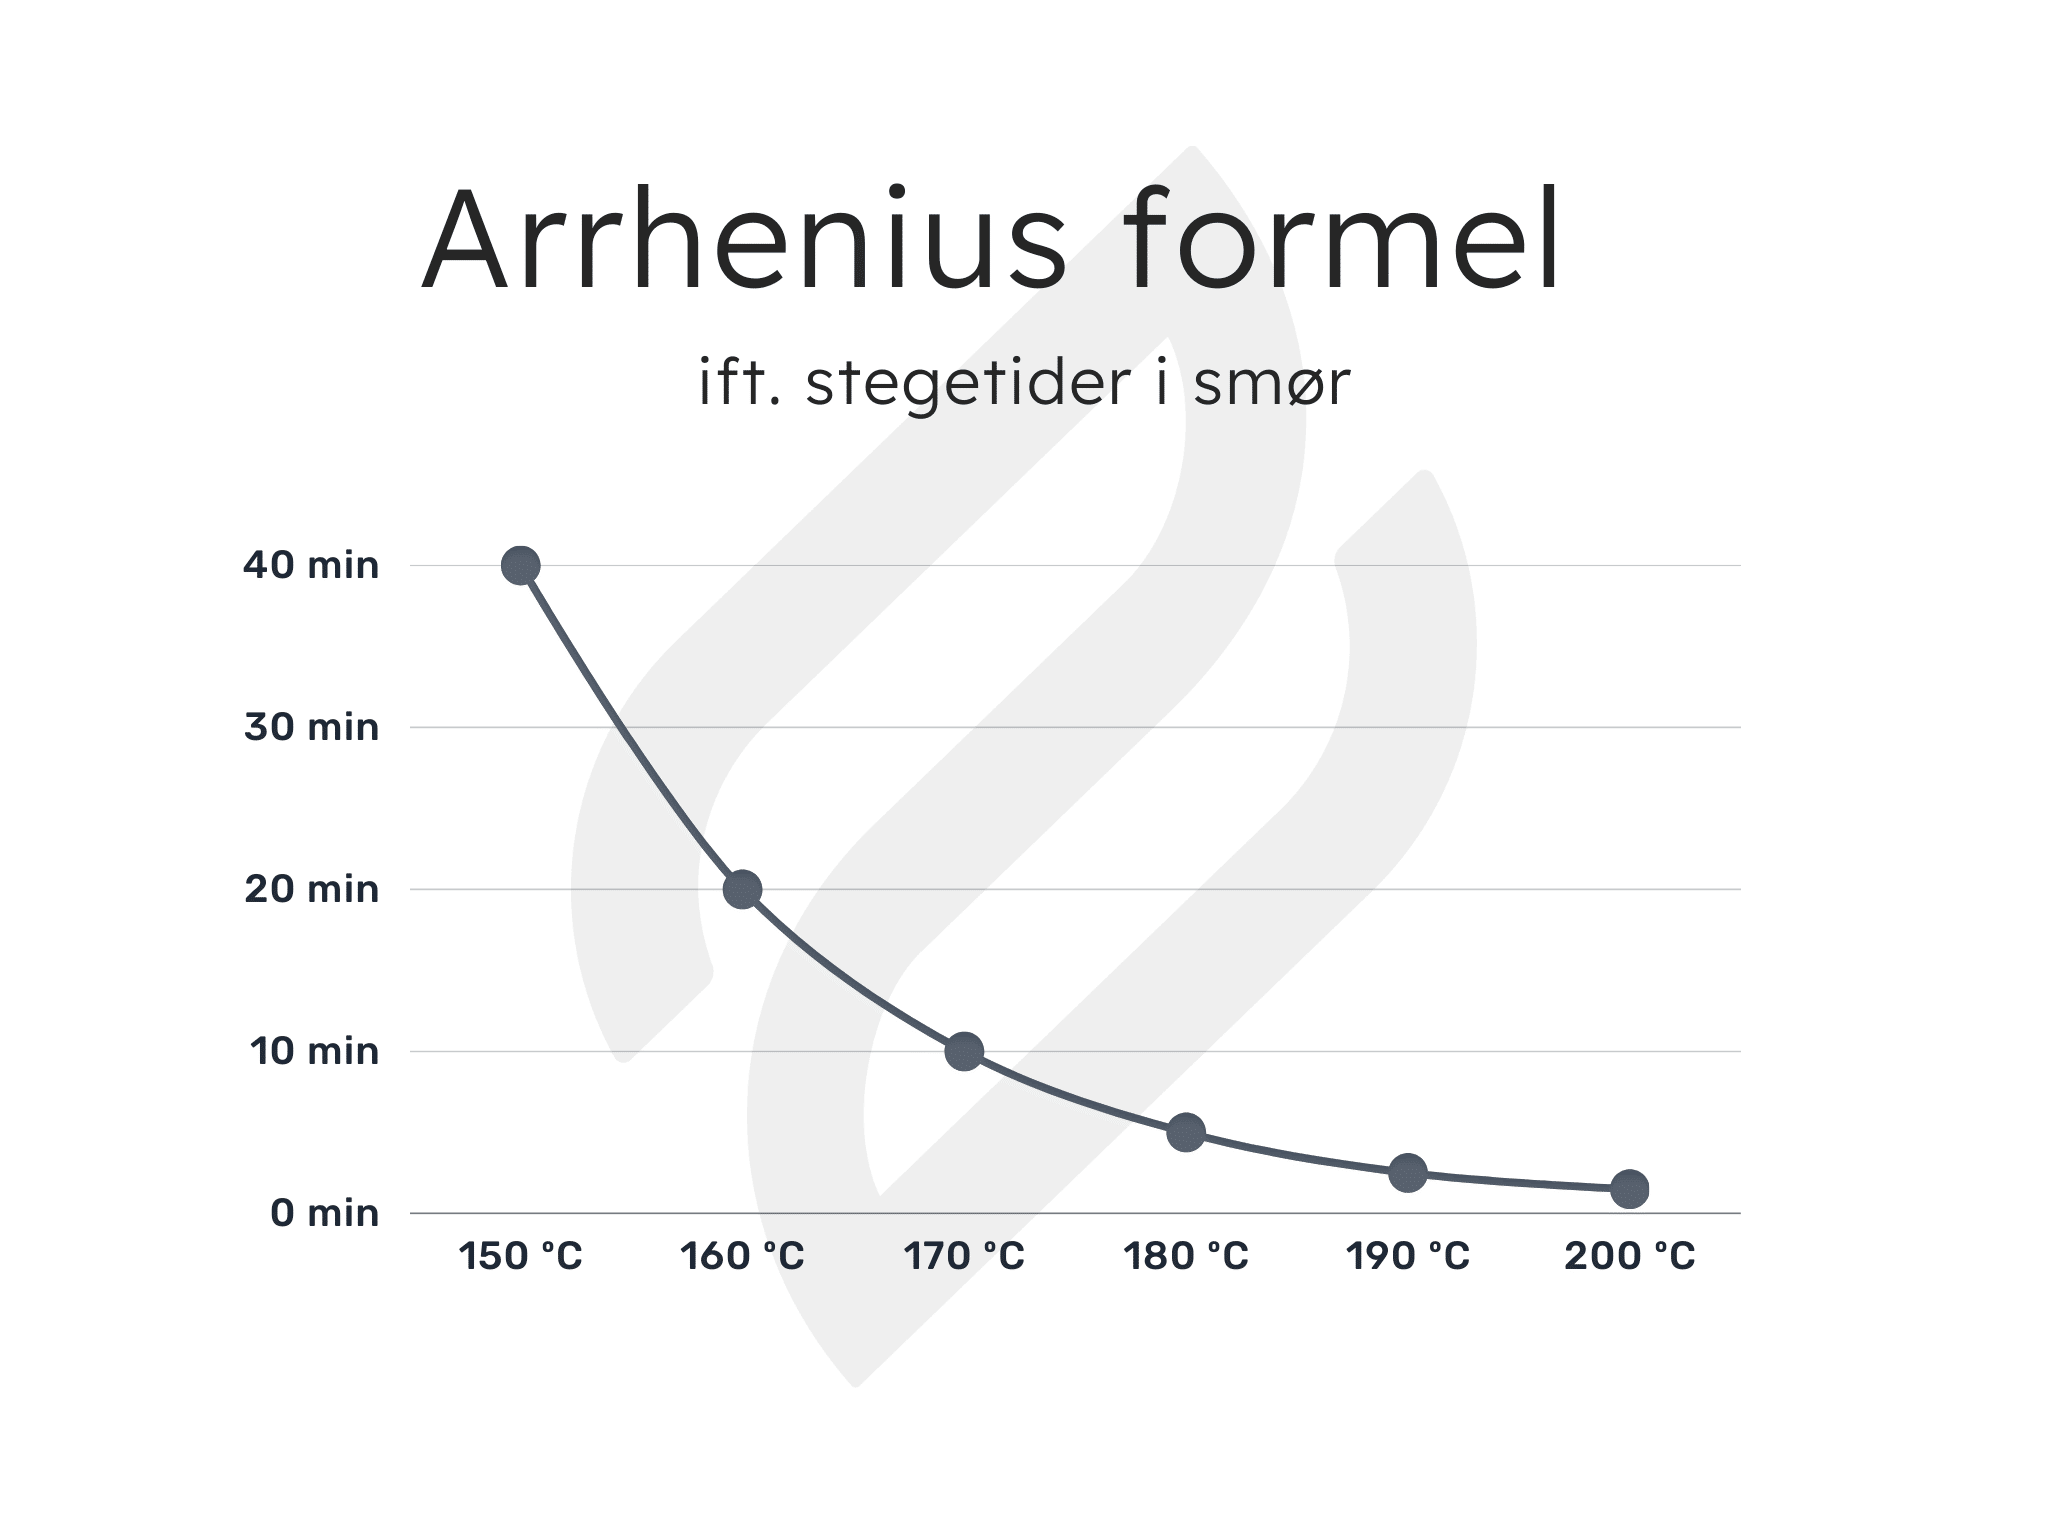 Arrhenius formel om temperatur og tid